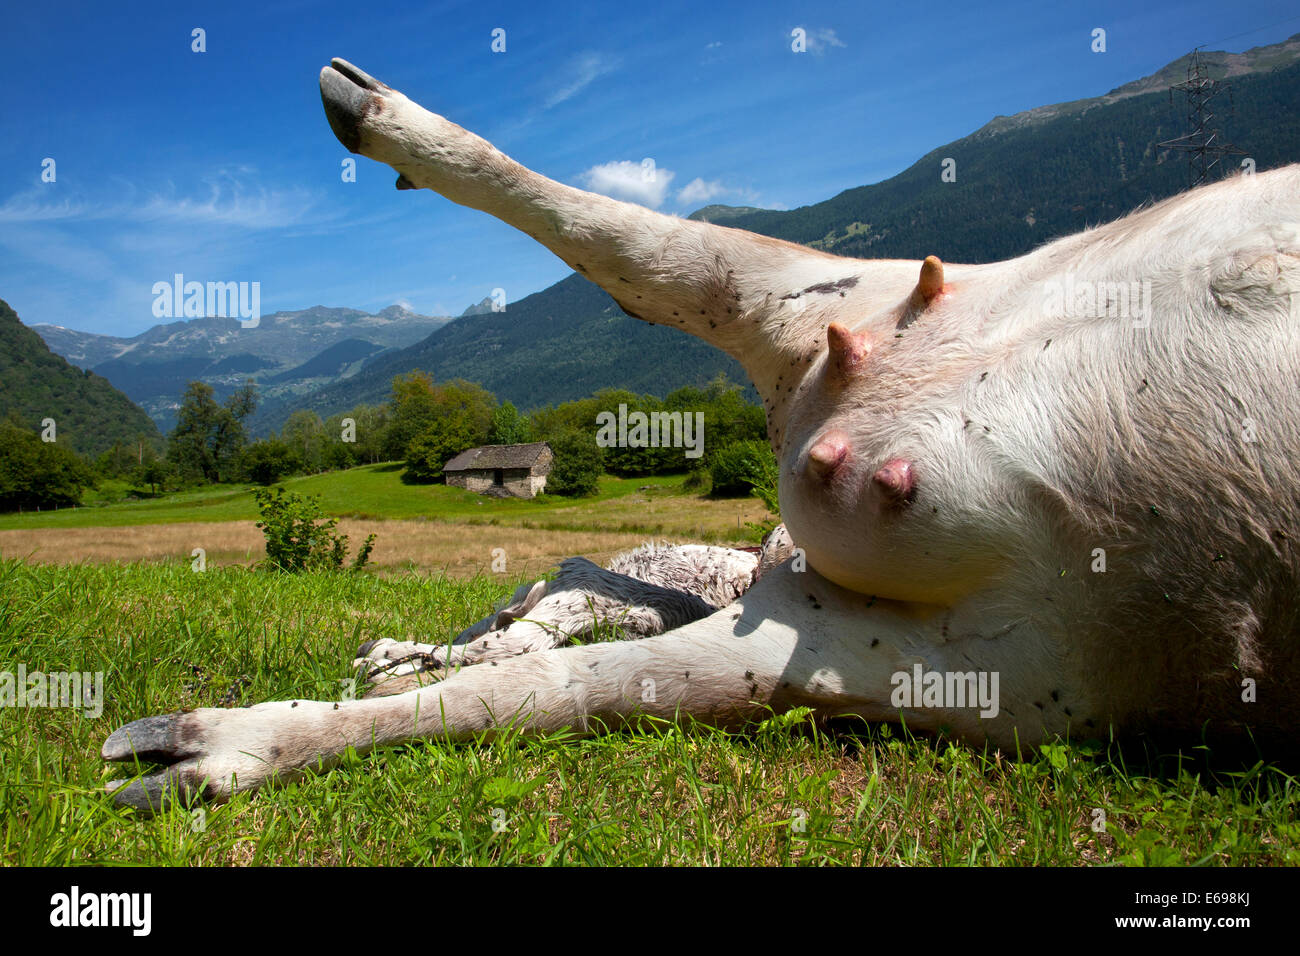 Dead cow with rigor mortis, Grumo, Switzerland. Stock Photo